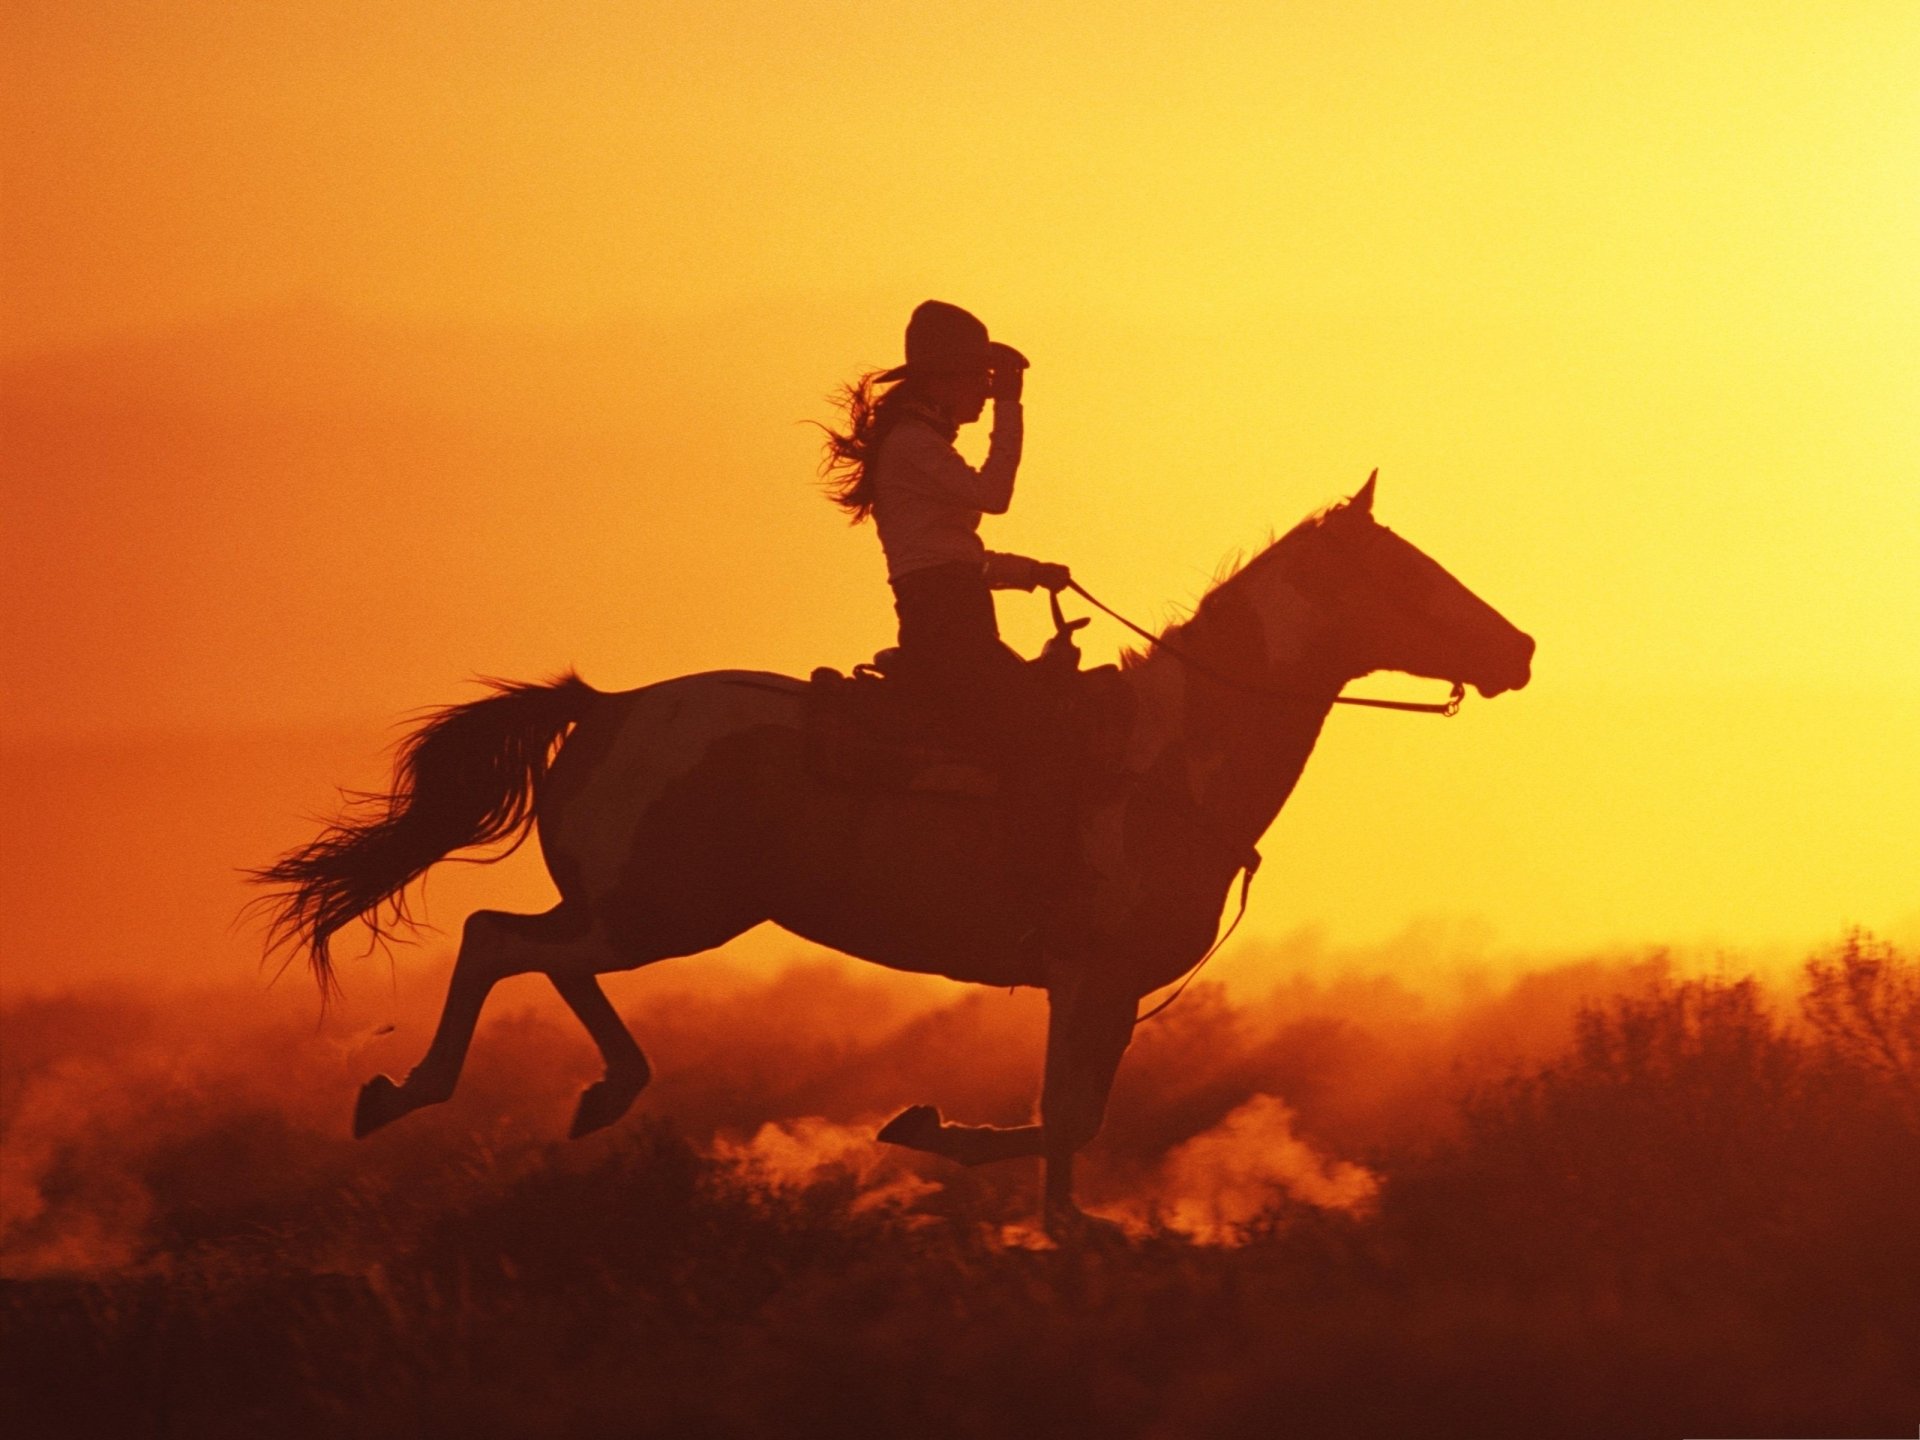 Ковбой скачет. Лошади на закате. Скачущий всадник. Всадник на коне. Конь и всадник.